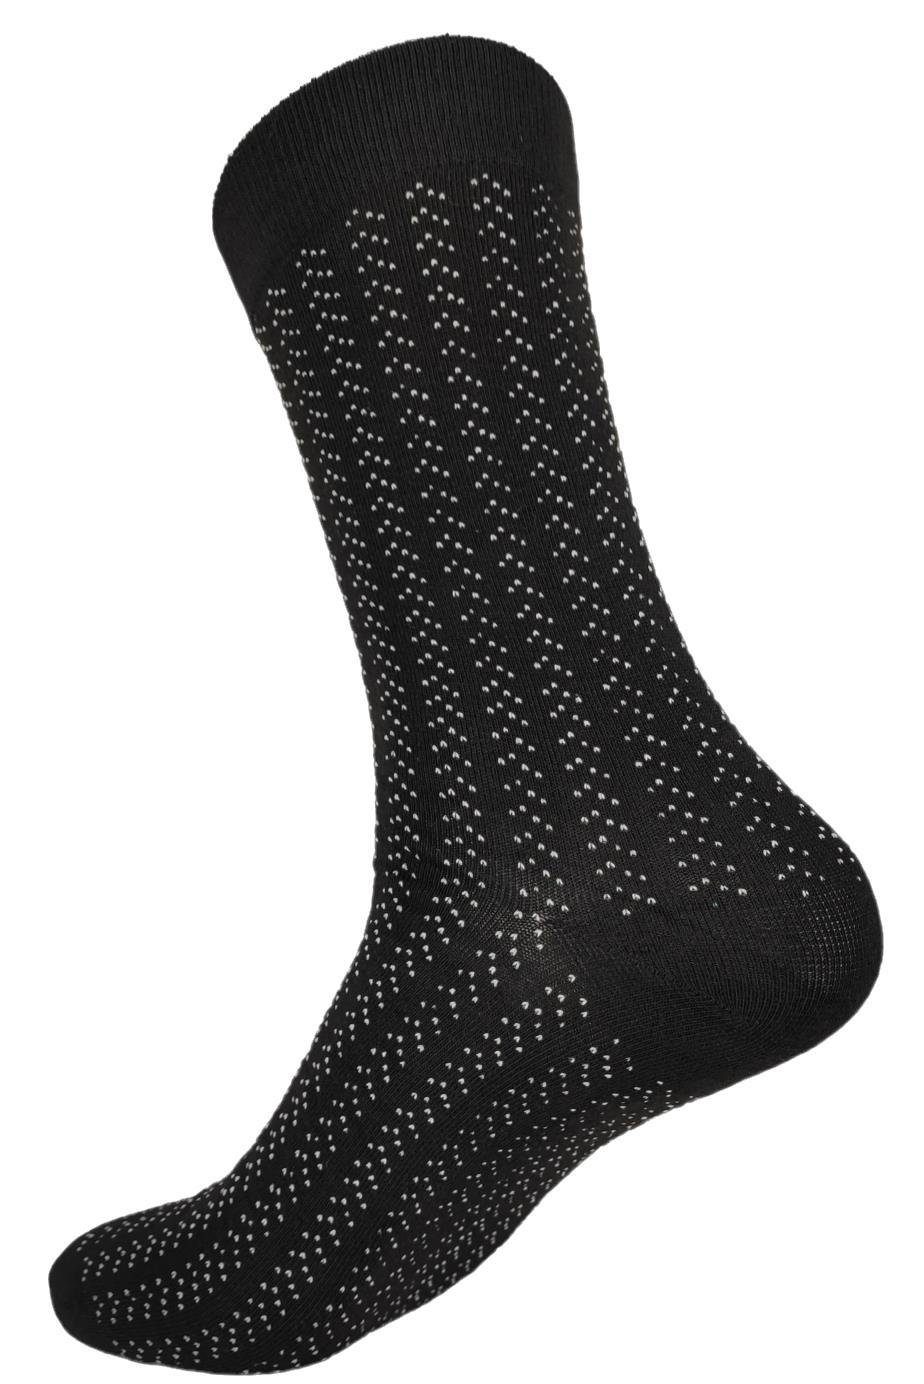 EloModa Basicsocken Sport klassischer Socken Mix9 Herren (12-Paar) Paar 12 Form 12 Muster Freizeit Paar